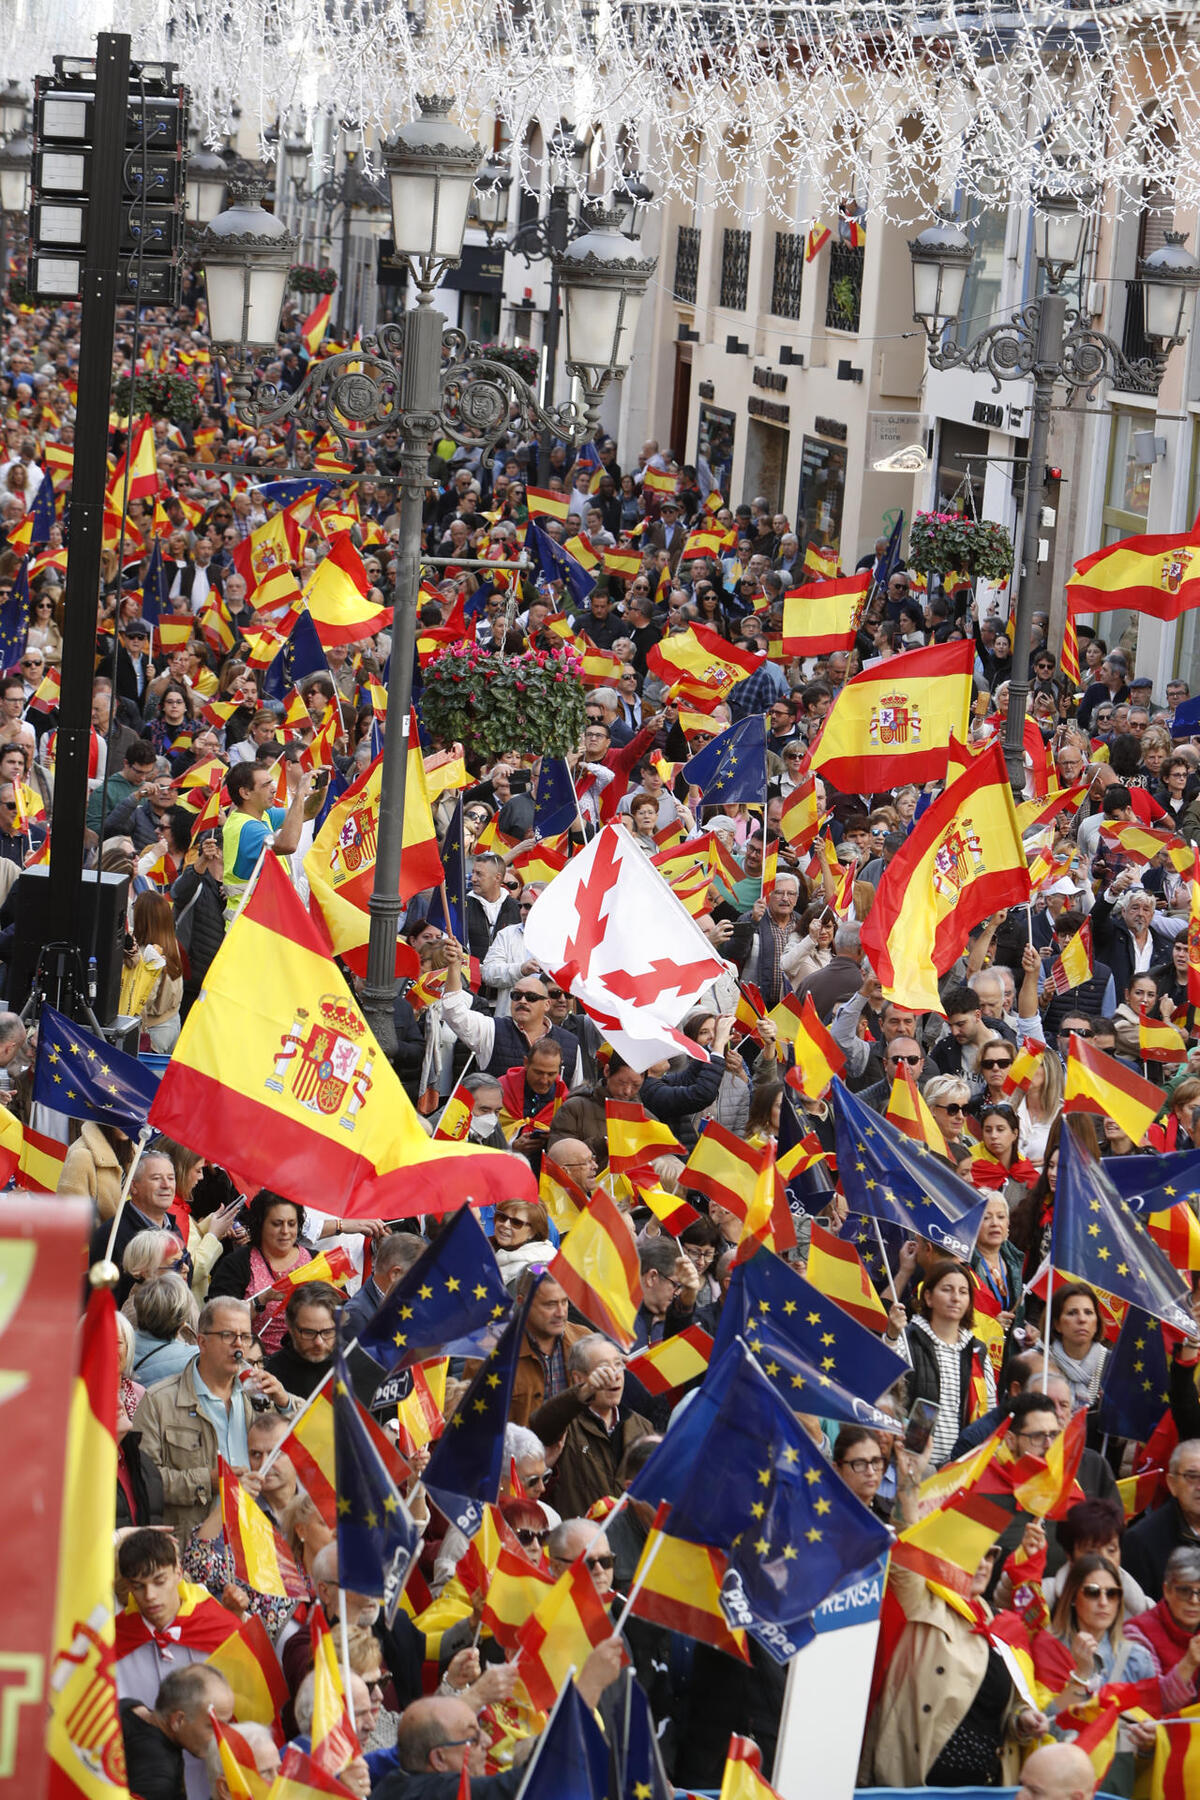 La derecha convoca protestas en toda España contra la amnistía a los independentistas catalanes